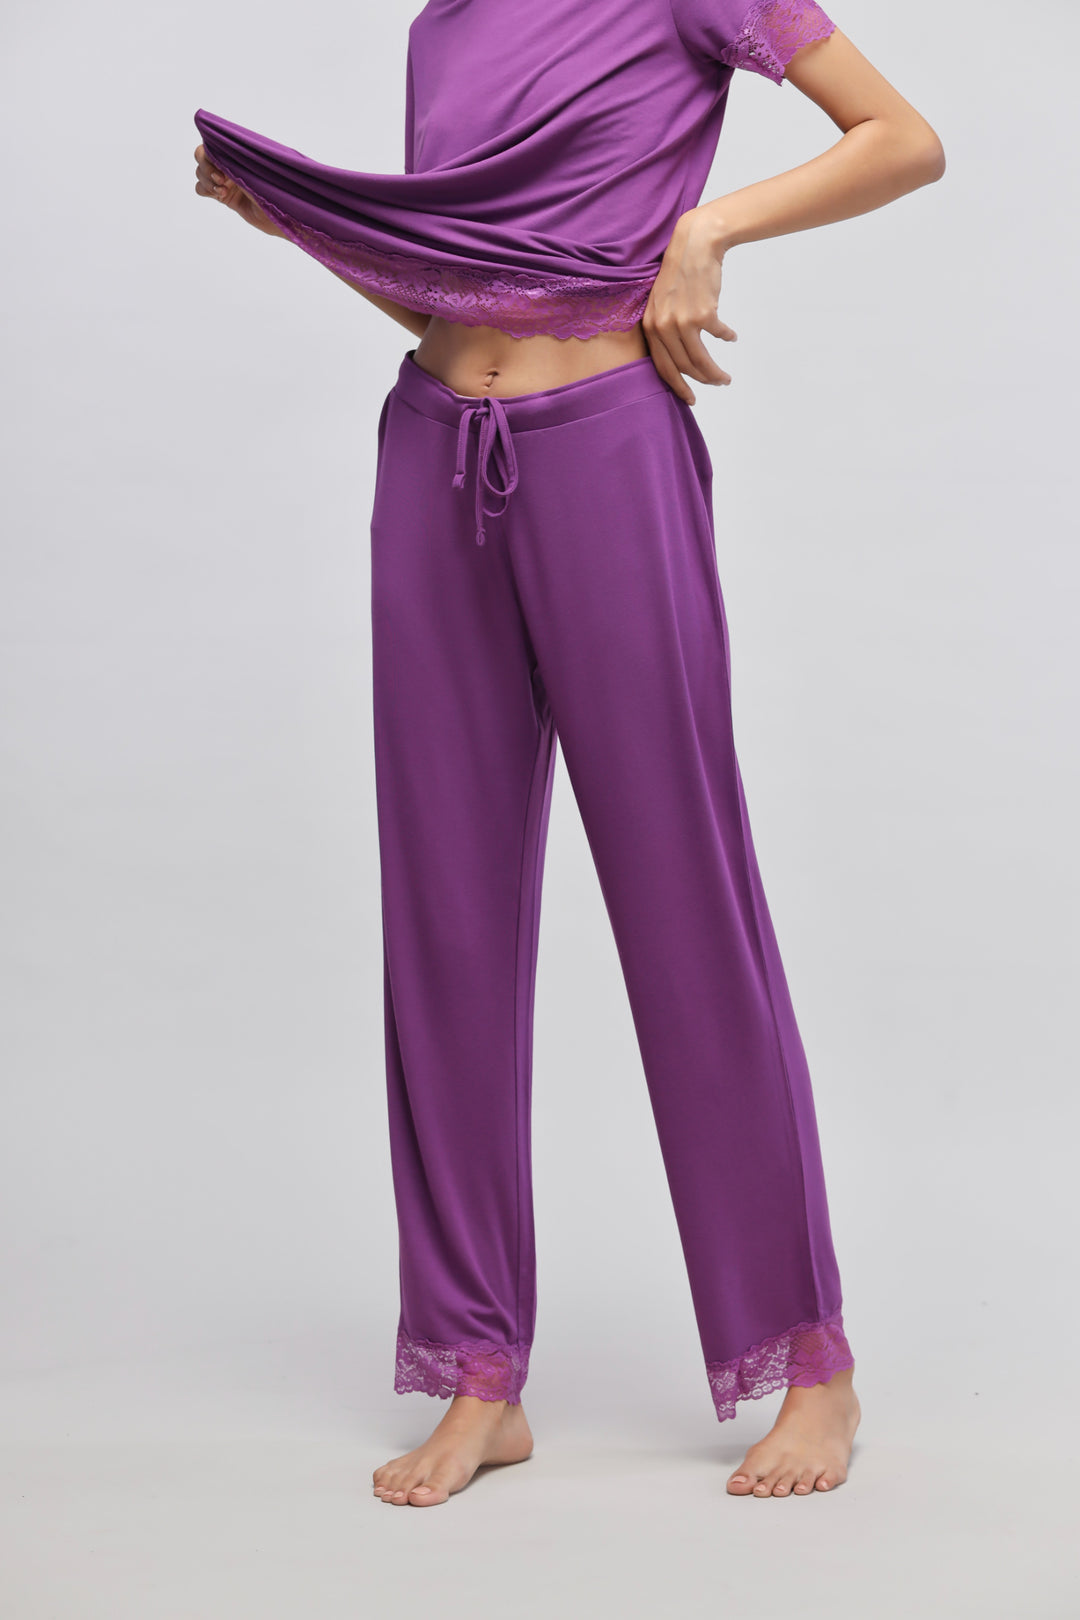 Dreamy Purple Lace Pajamas